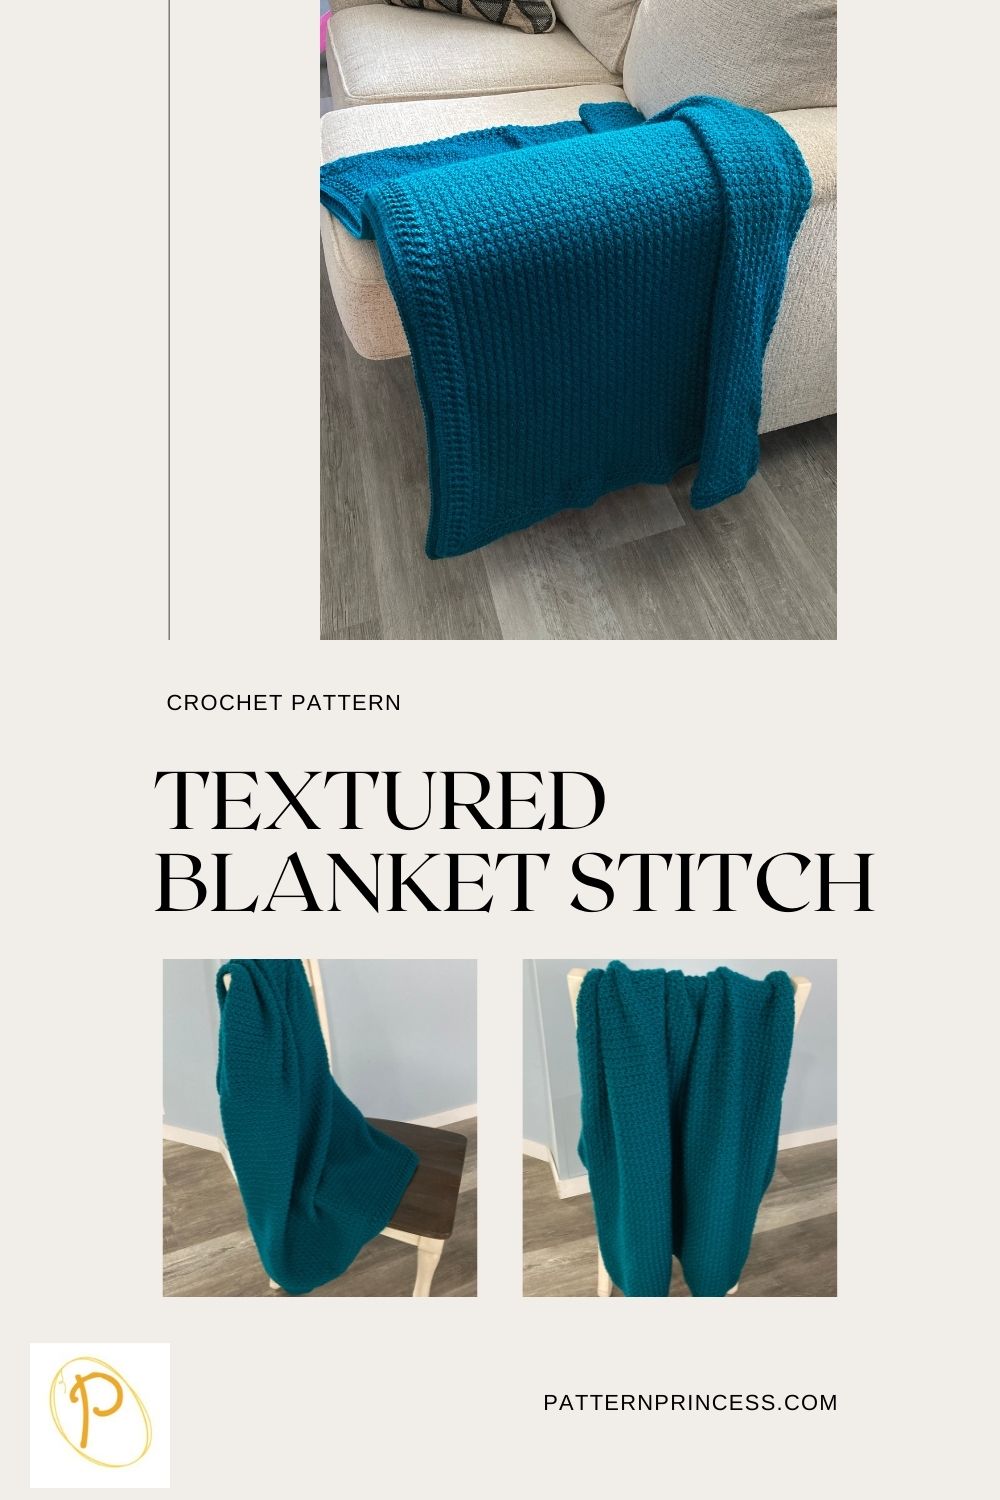 Textured Blanket Stitch crochet pattern